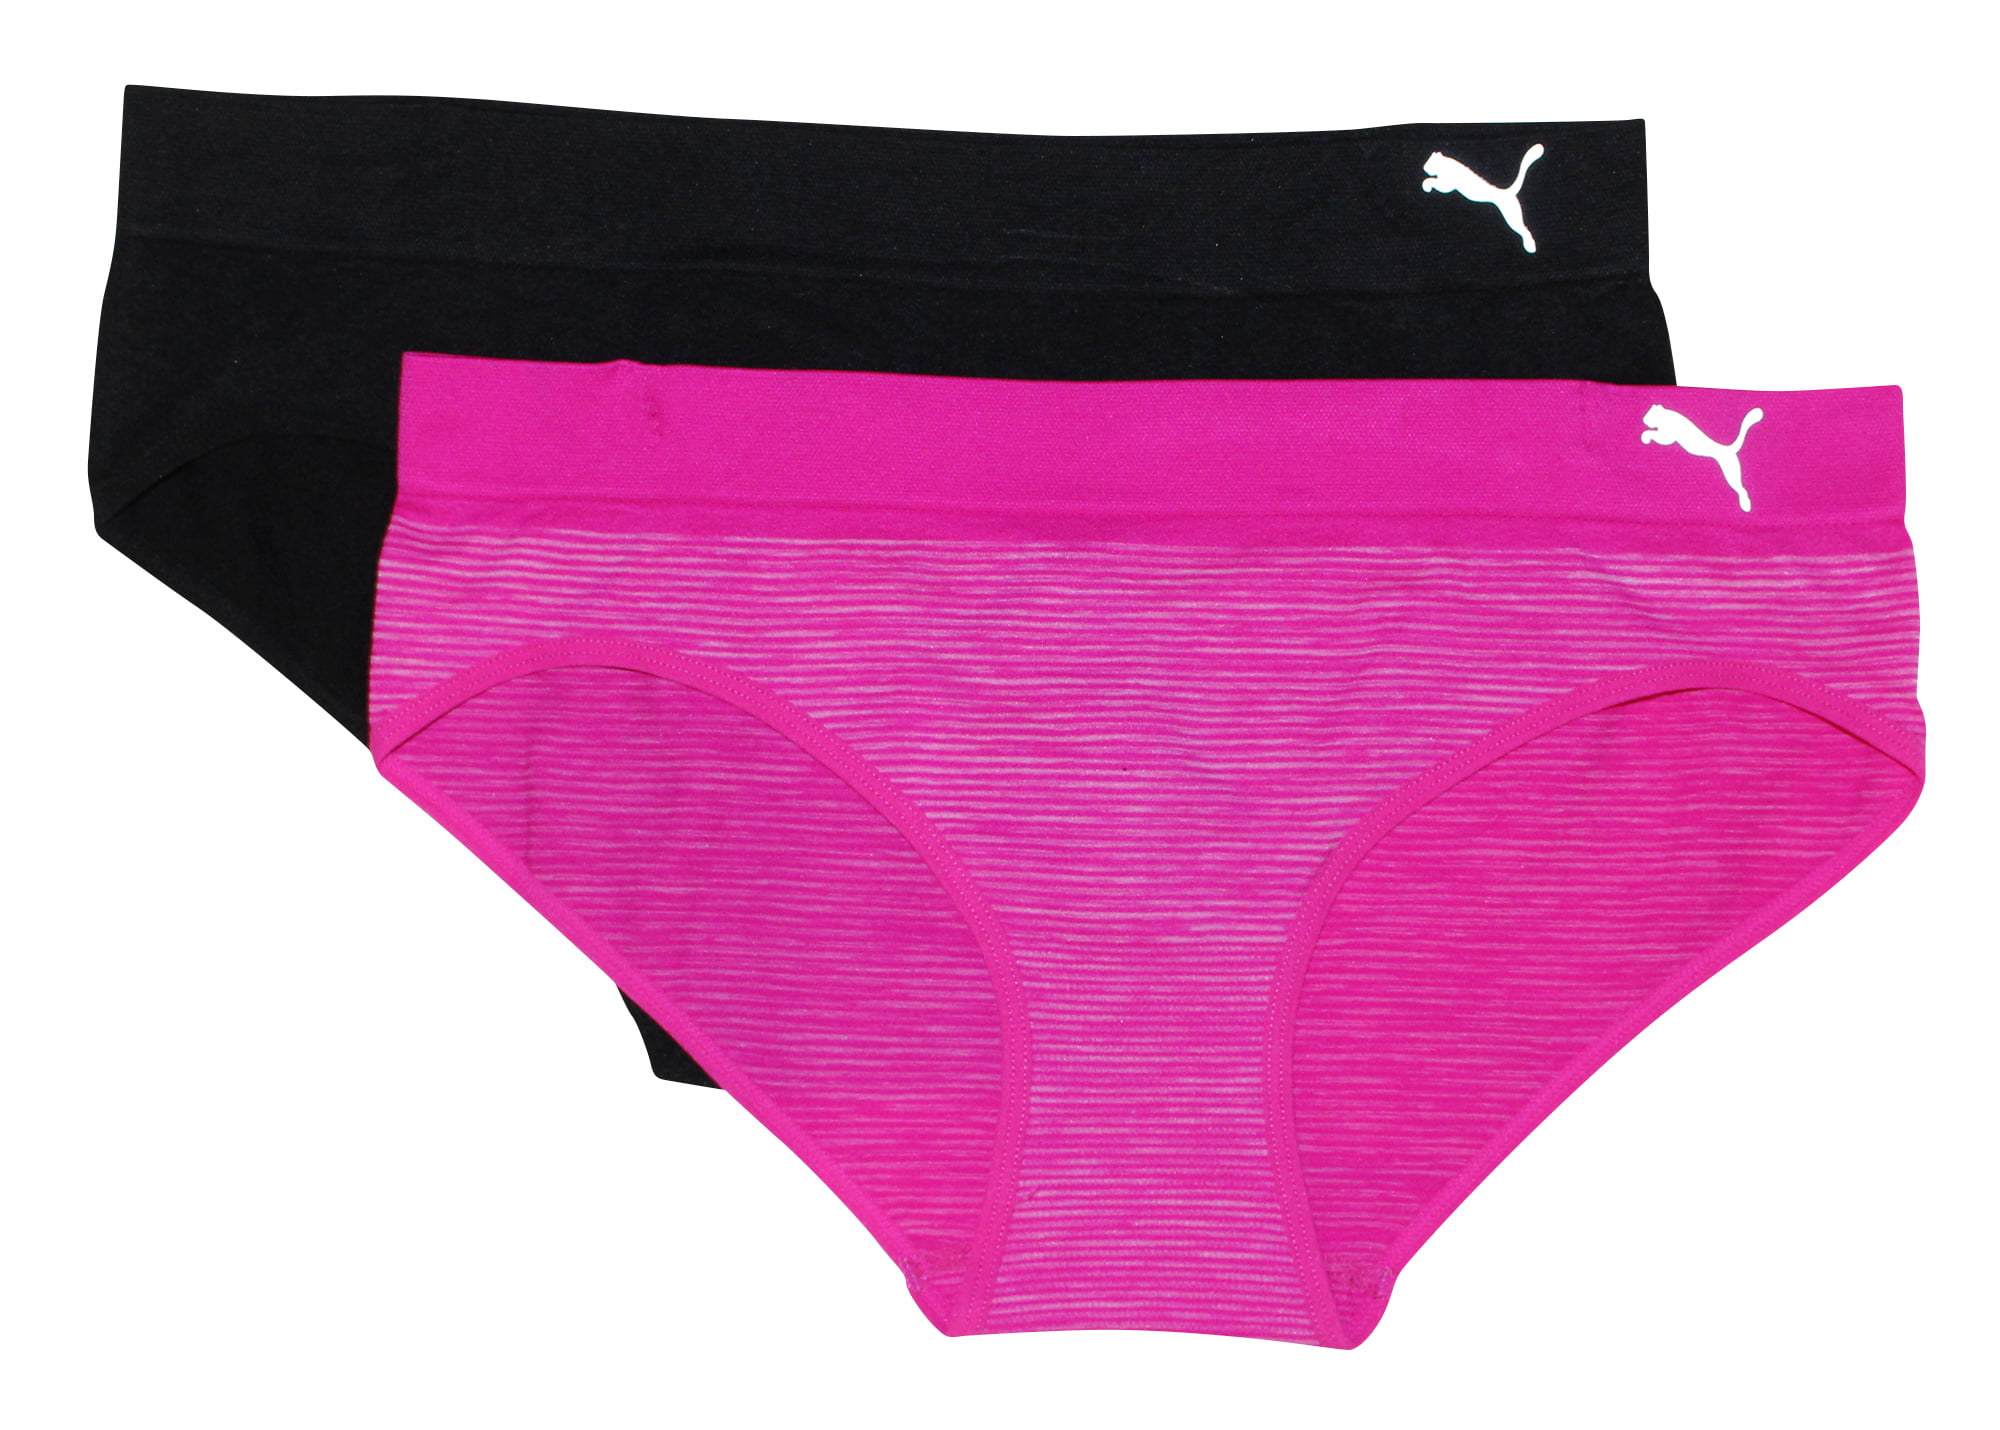 puma seamless underwear